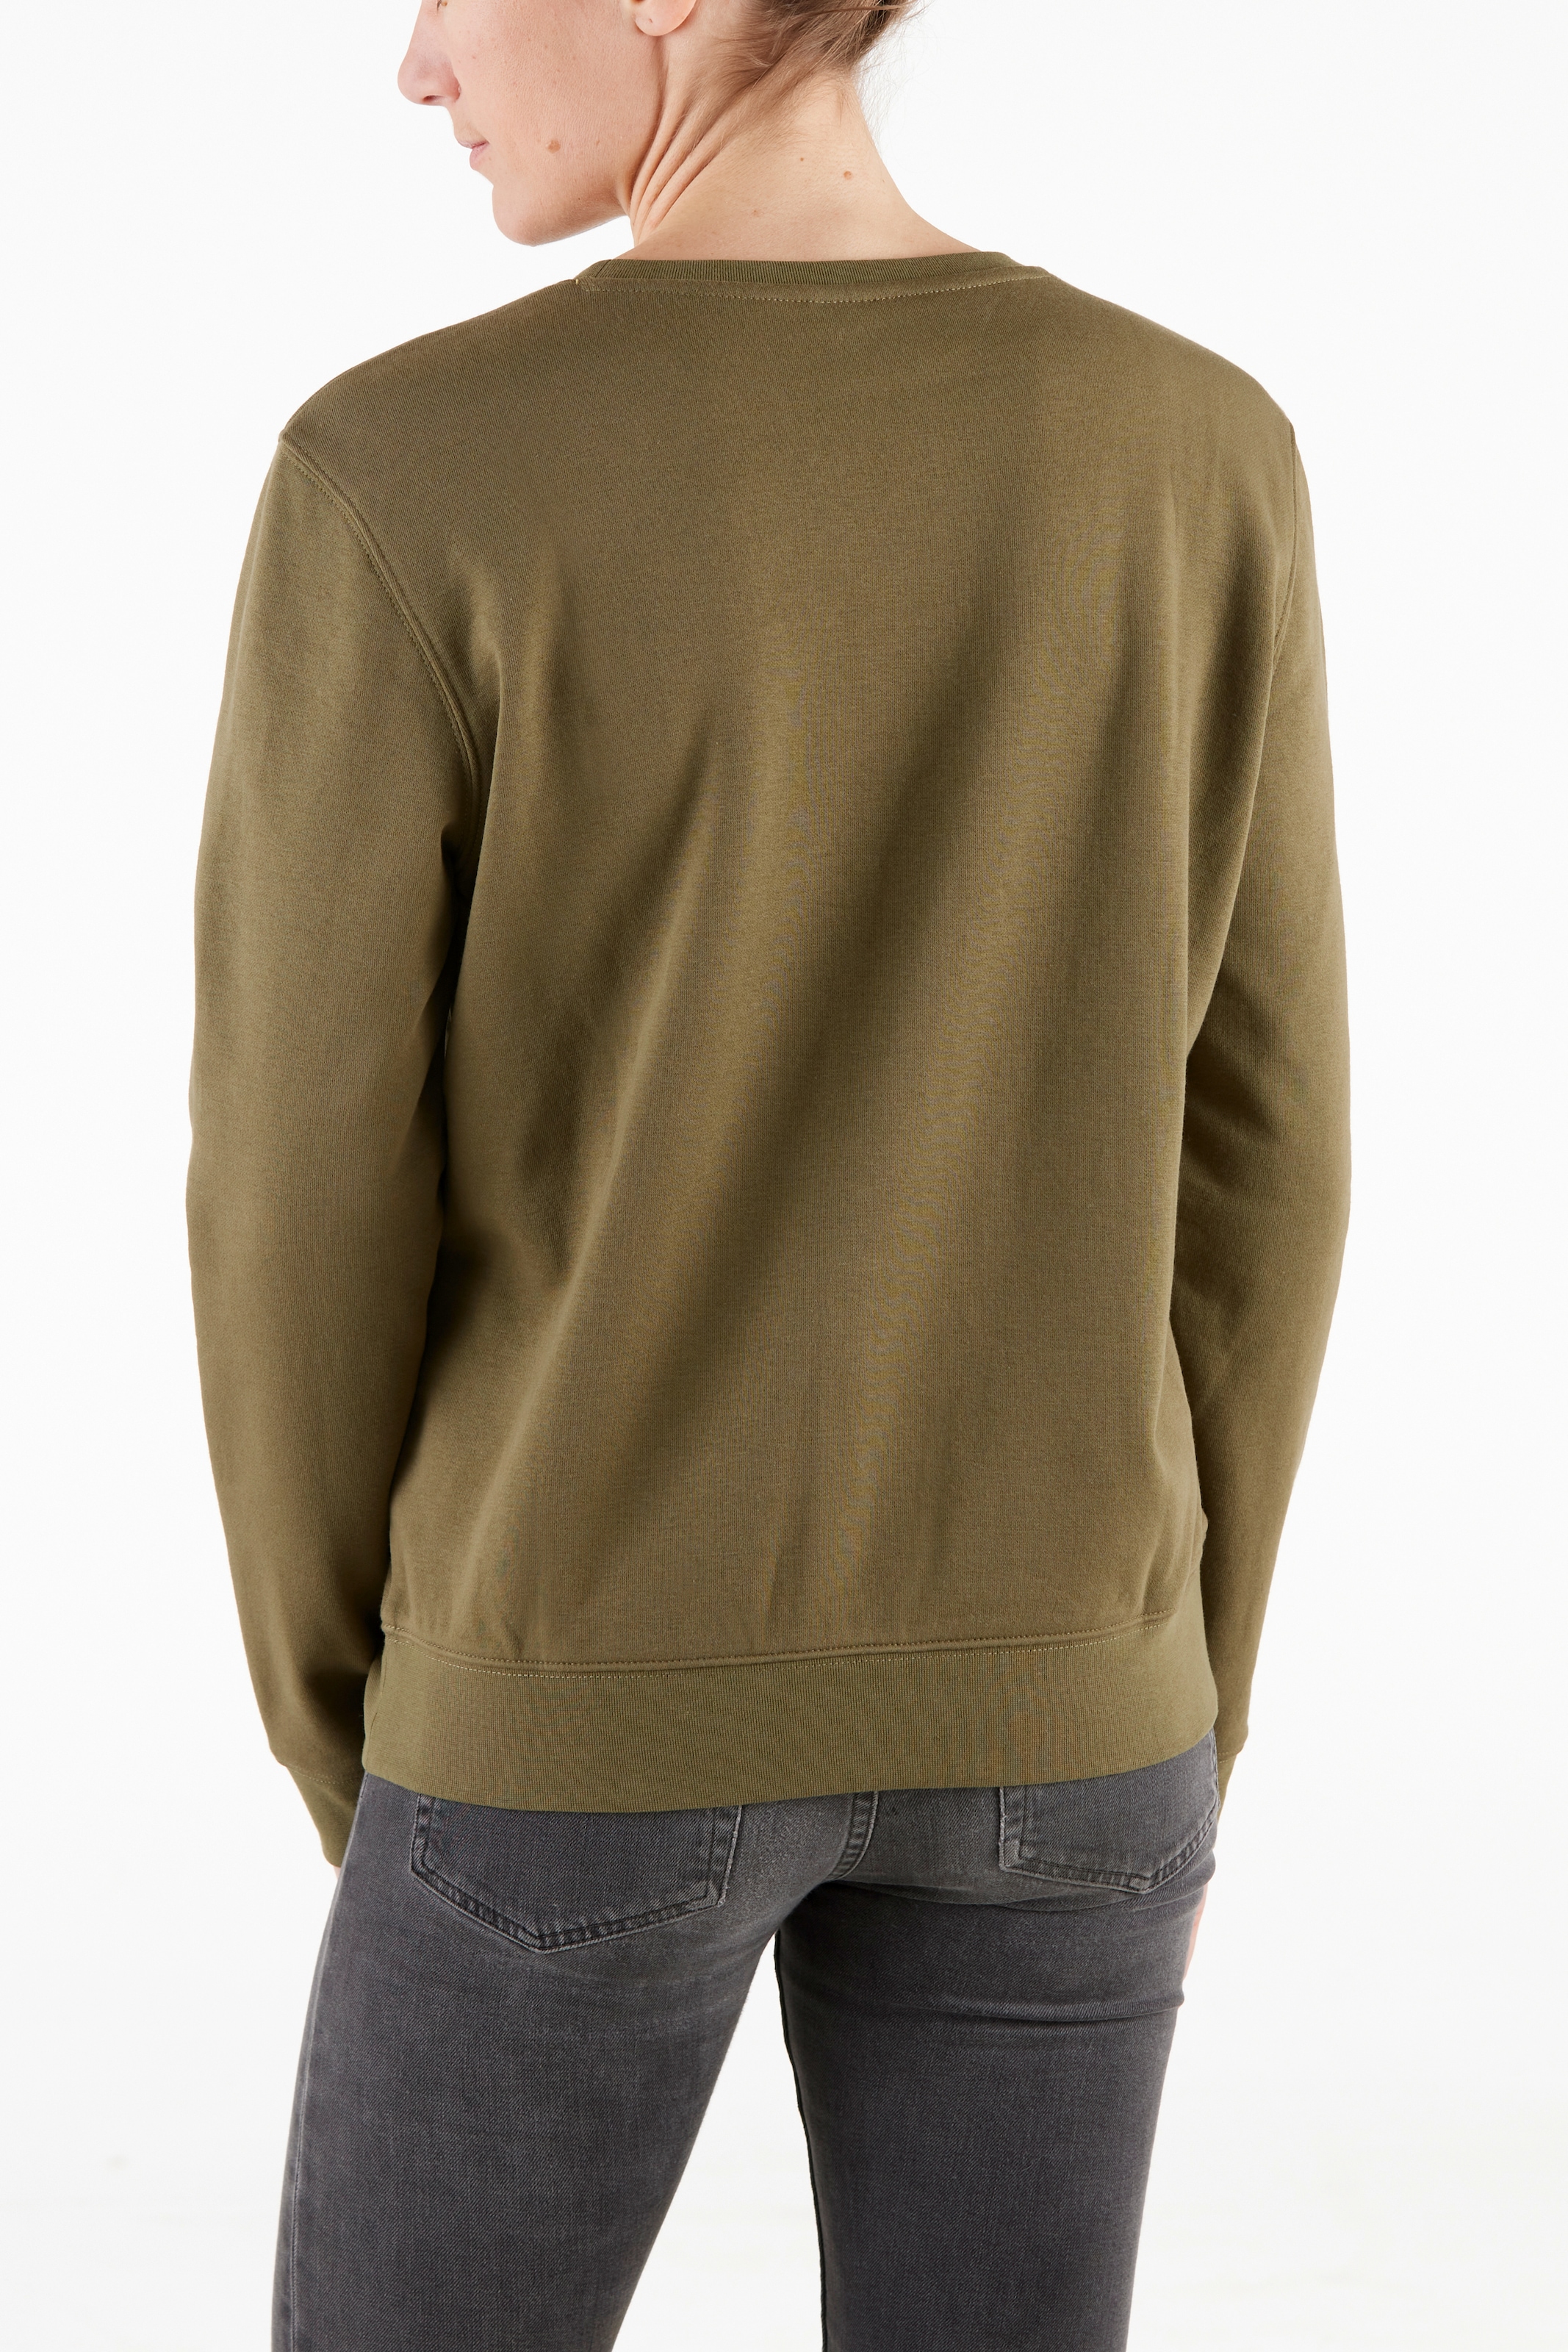 Northern Country Baumwollmix, trägt aus soften leicht locker und Damen sich Sweatshirt, für bestellen